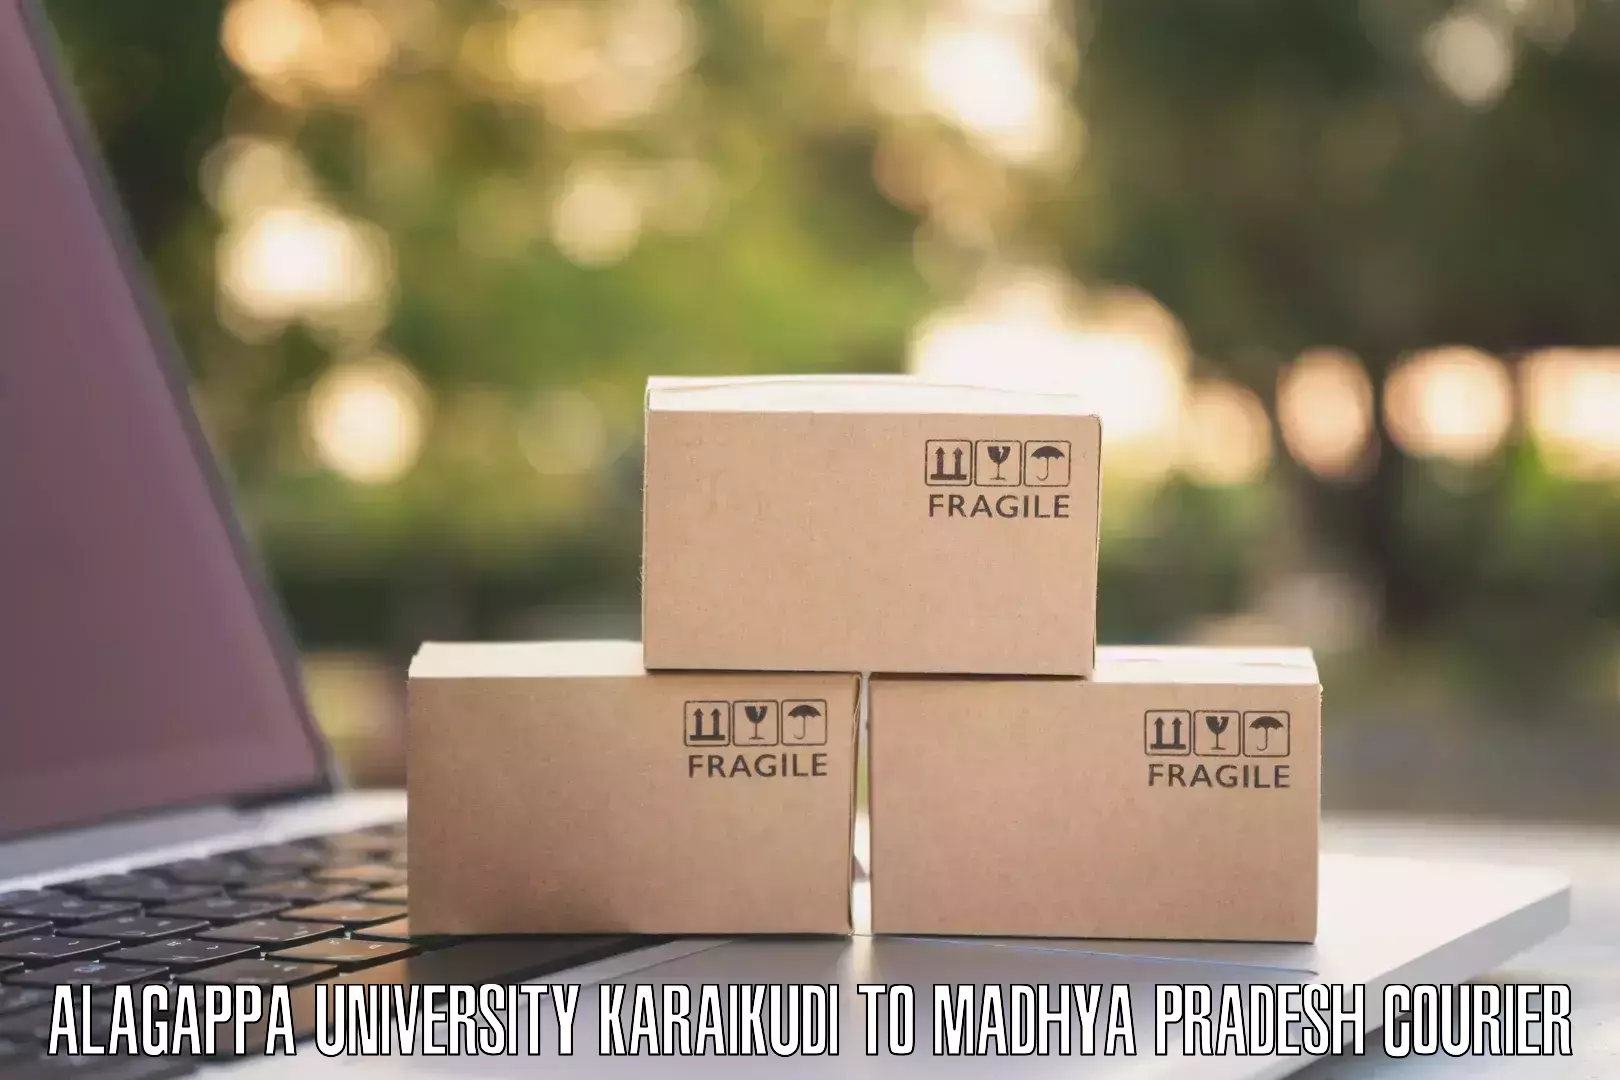 Reliable freight solutions Alagappa University Karaikudi to Gotegaon